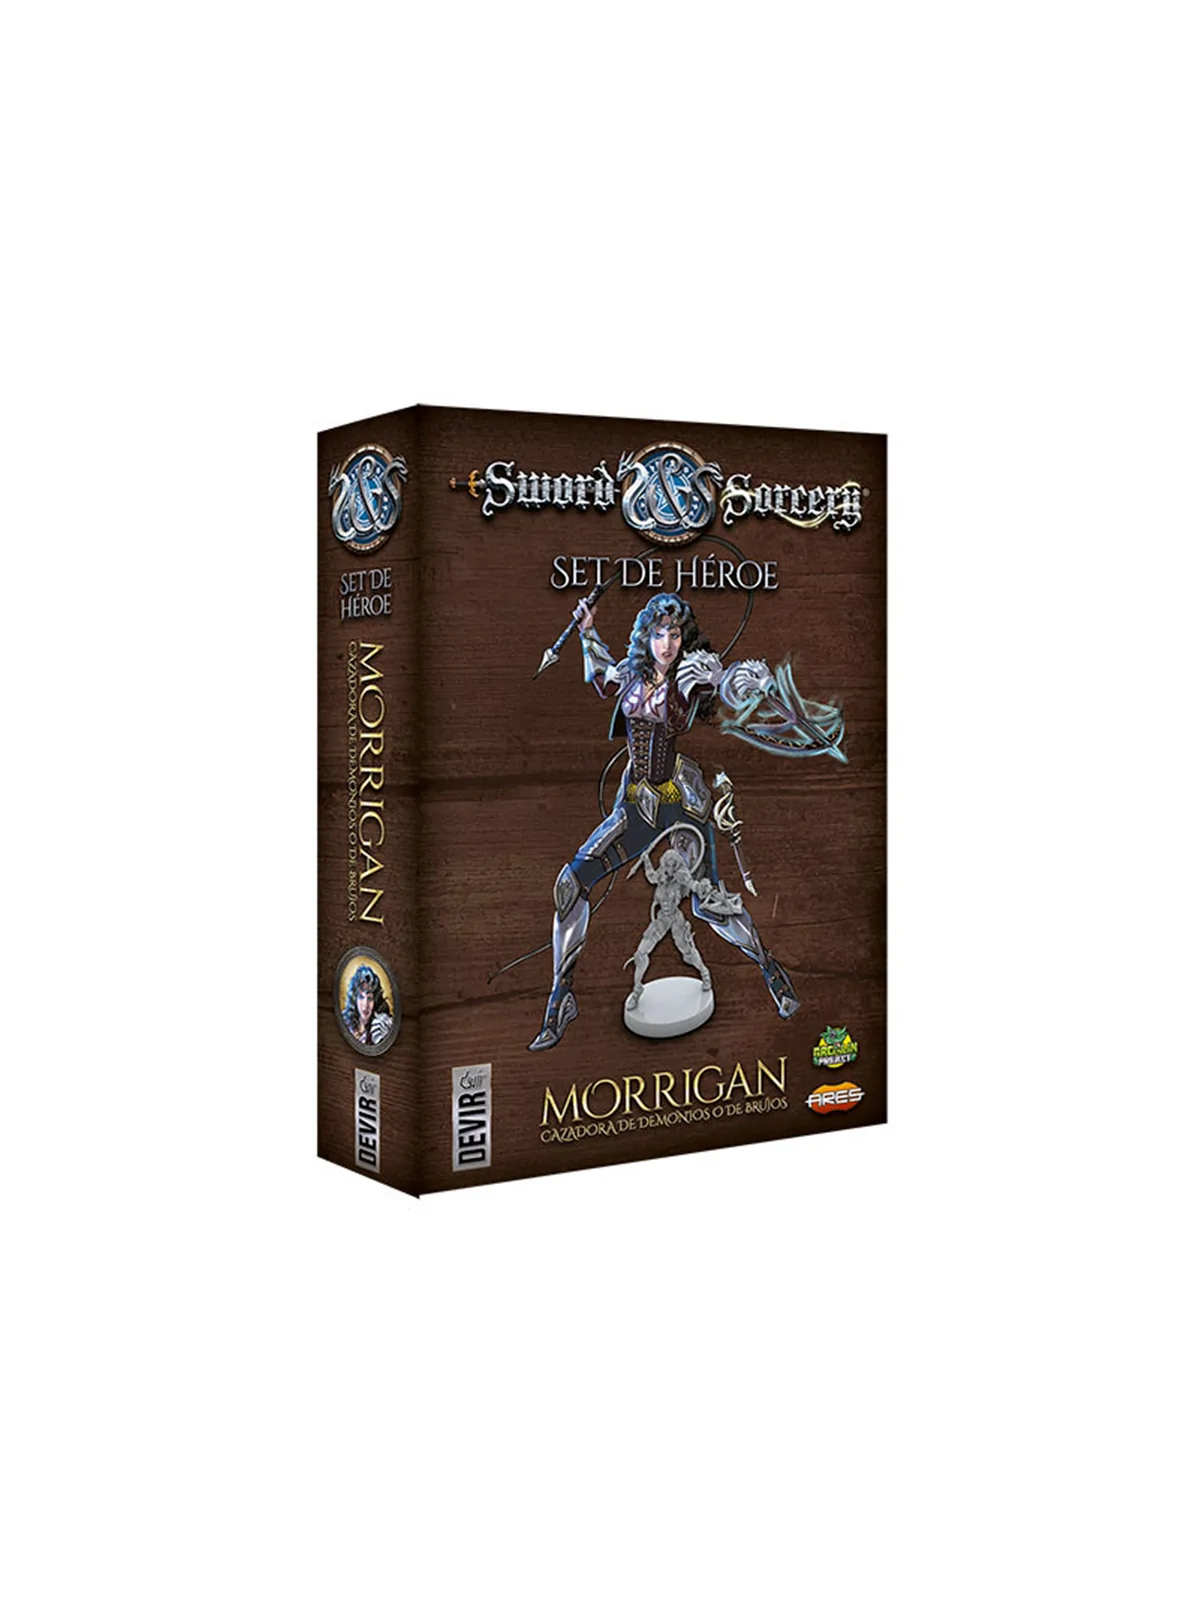 Comprar Sword and Sorcery - Personajes - Morrigan barato al mejor prec